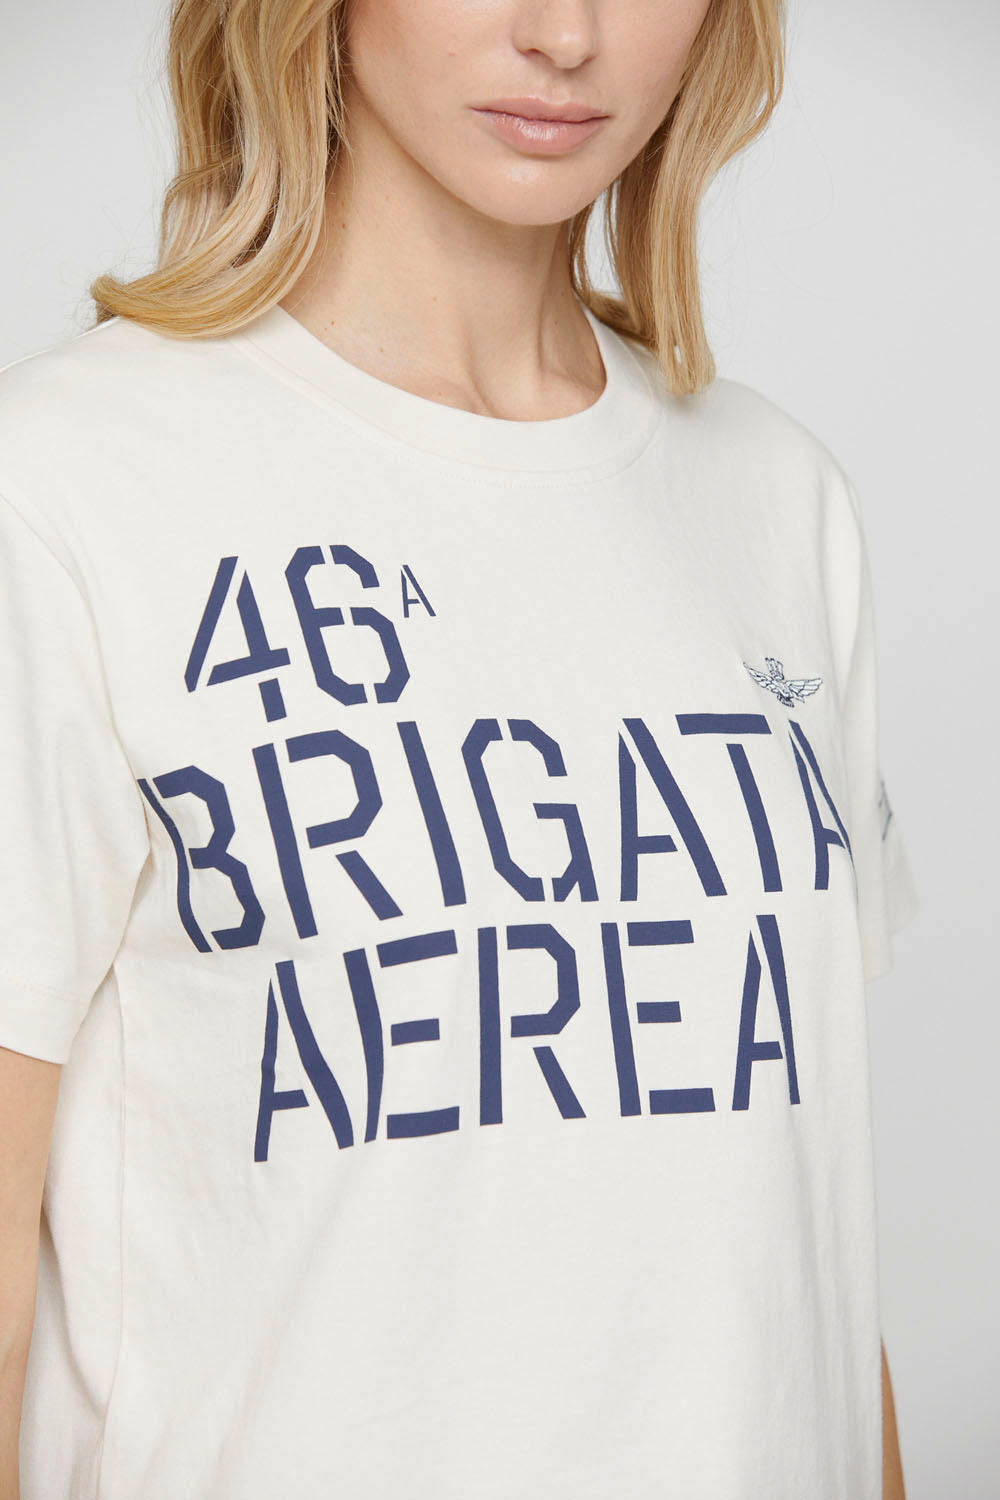 Camiseta estampado 46° Brigata